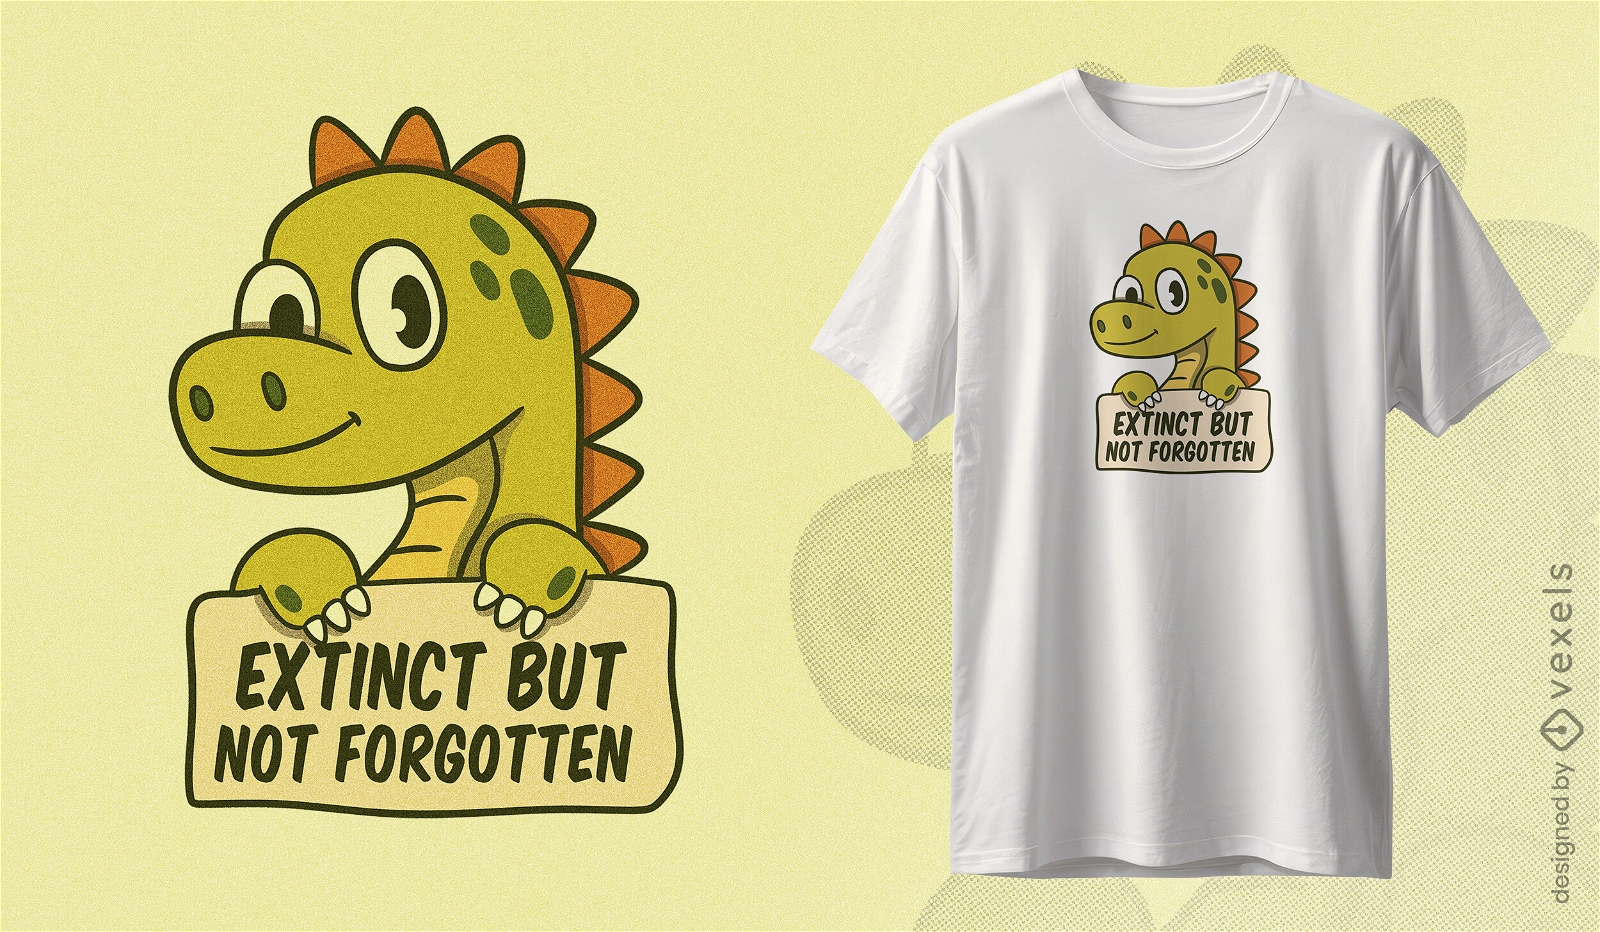 Diseño de camiseta con mensaje de conservación de dinosaurios.